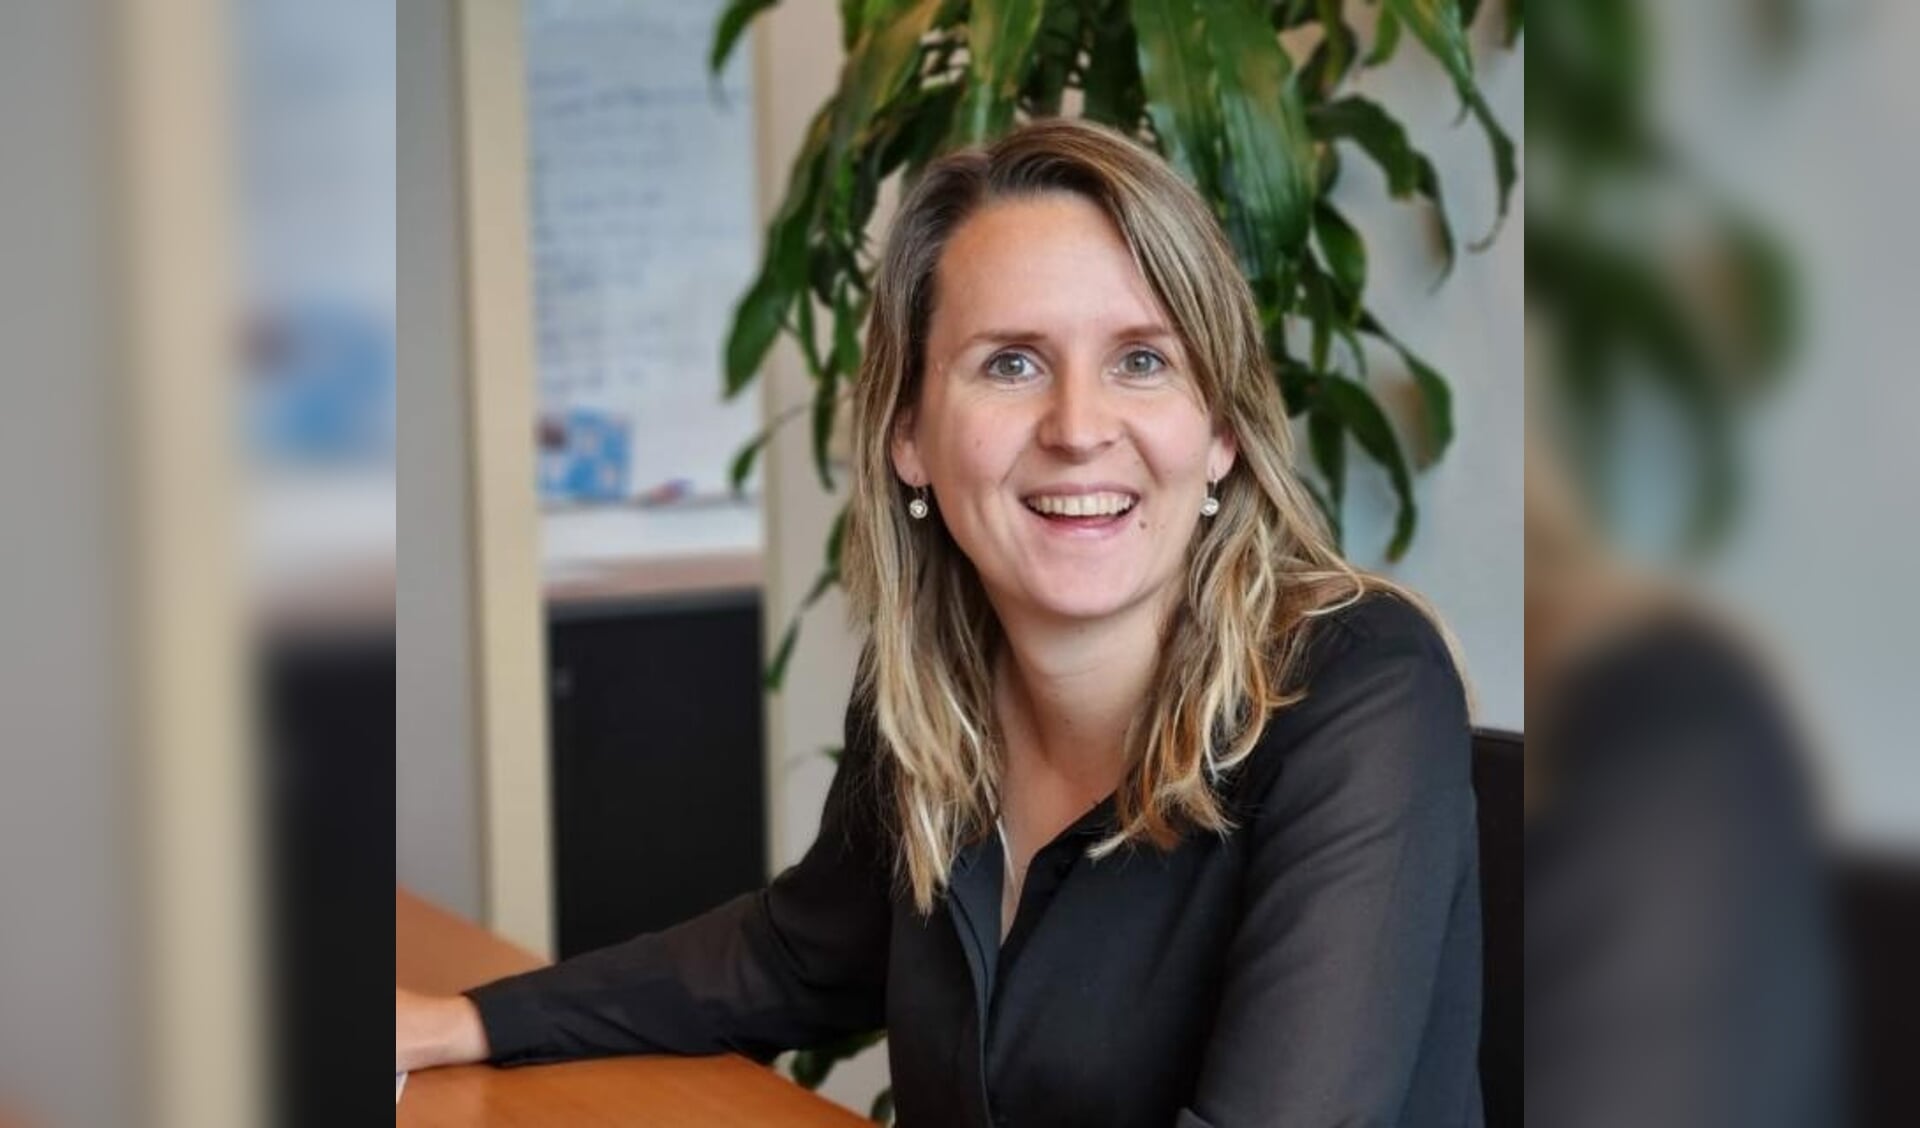 Mieke van der Veeken is projectcoordinator bij IVIO dat in Gorinchem taallessen gaat verzorgen